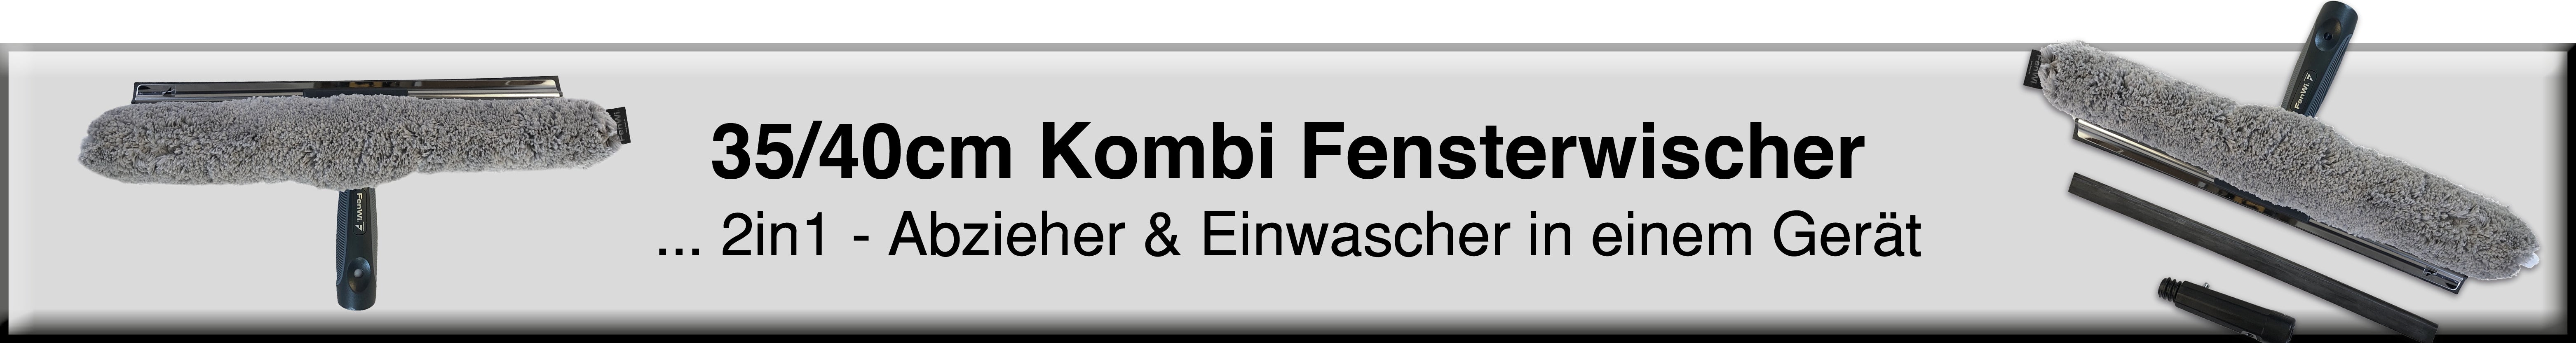 FenWi 25/30cm Profi Kombi Fensterwischer 2in1 / Abzieher & Einwascher –  FenWi-Shop